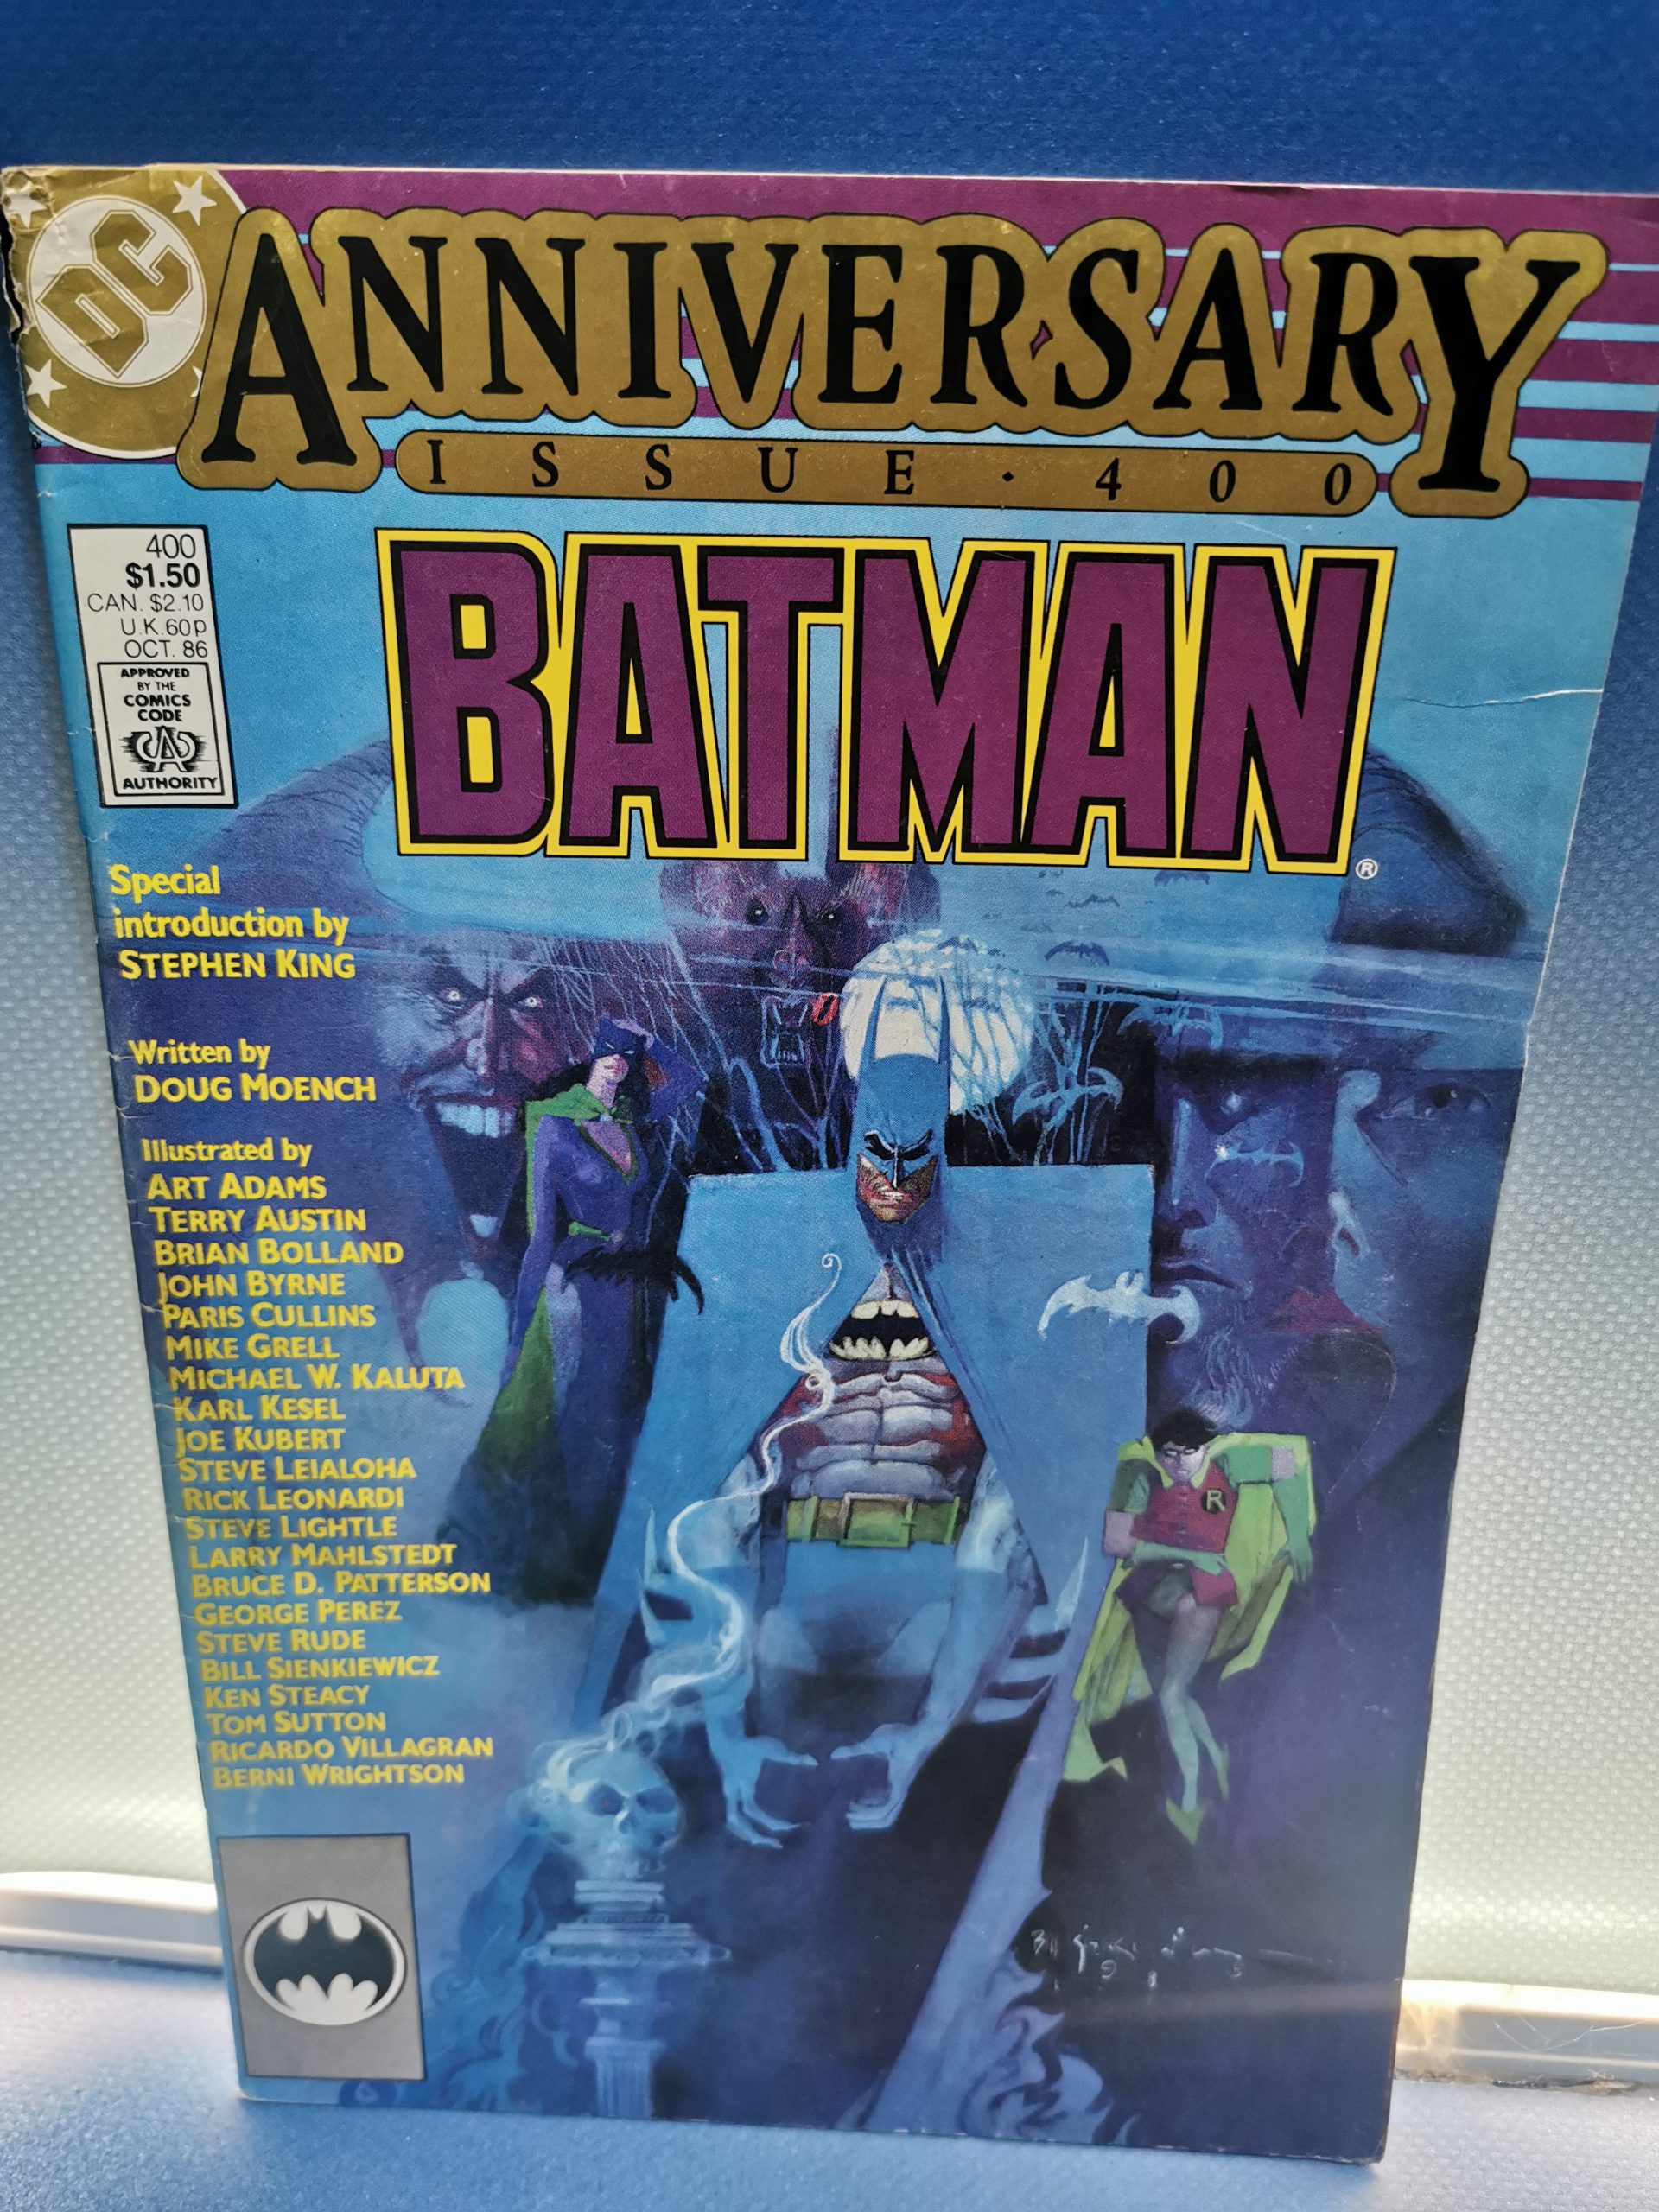 Comic BATMAN ANNIVERSARY nº 400, con Stephen King Intro, año 1986, edición  aniversario, DC Comics - VendeloAmazing